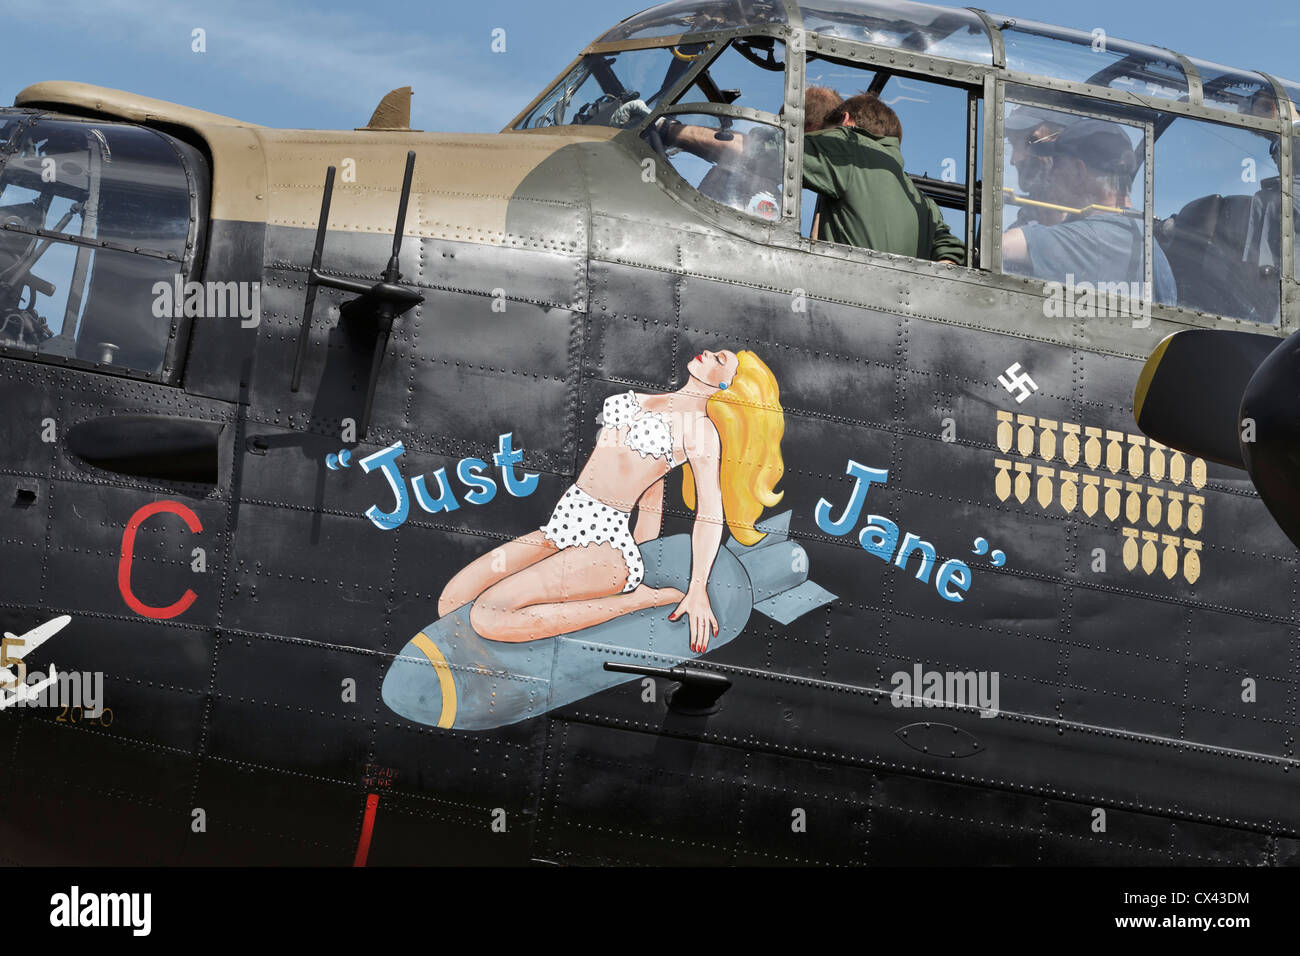 Jane juste les dessins de nez de l'avion Avro Lancaster RAF Bomber Banque D'Images